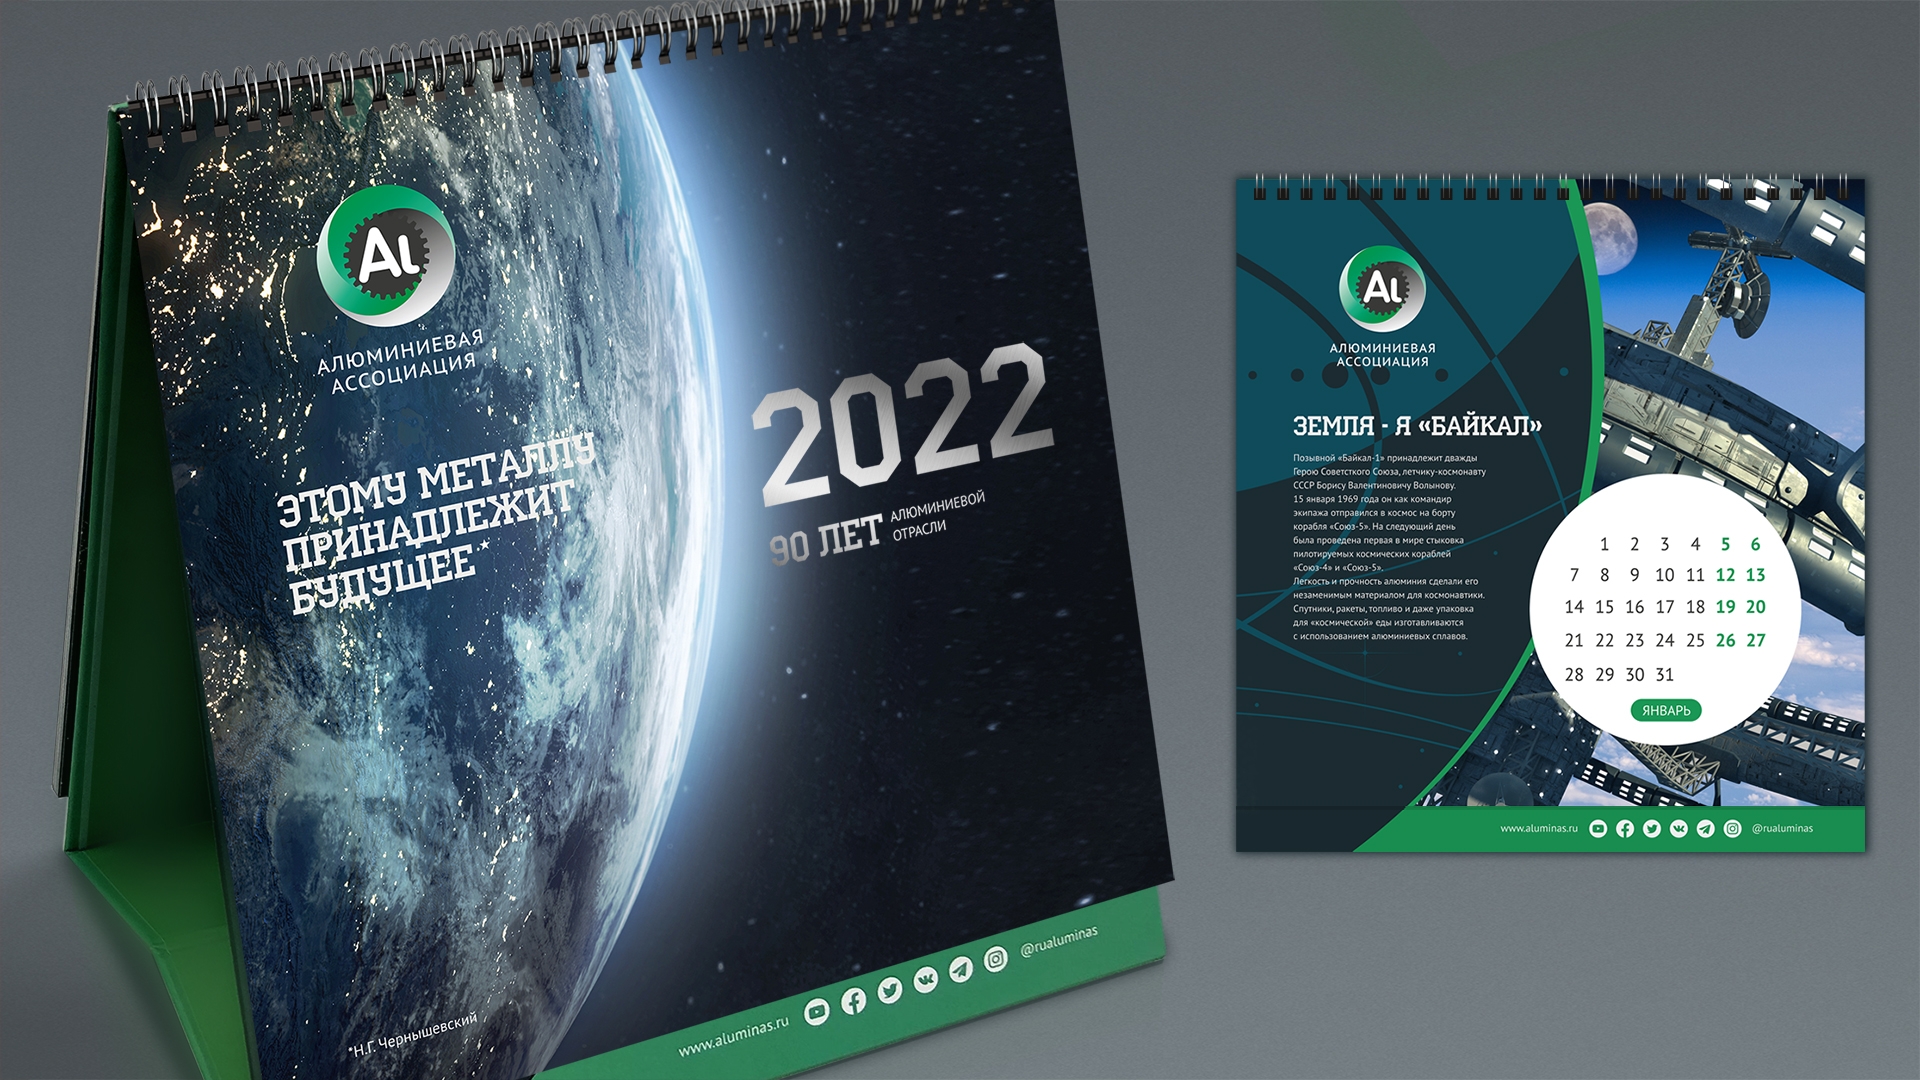 Алюминиевая ассоциация - Календарь на 2022 год